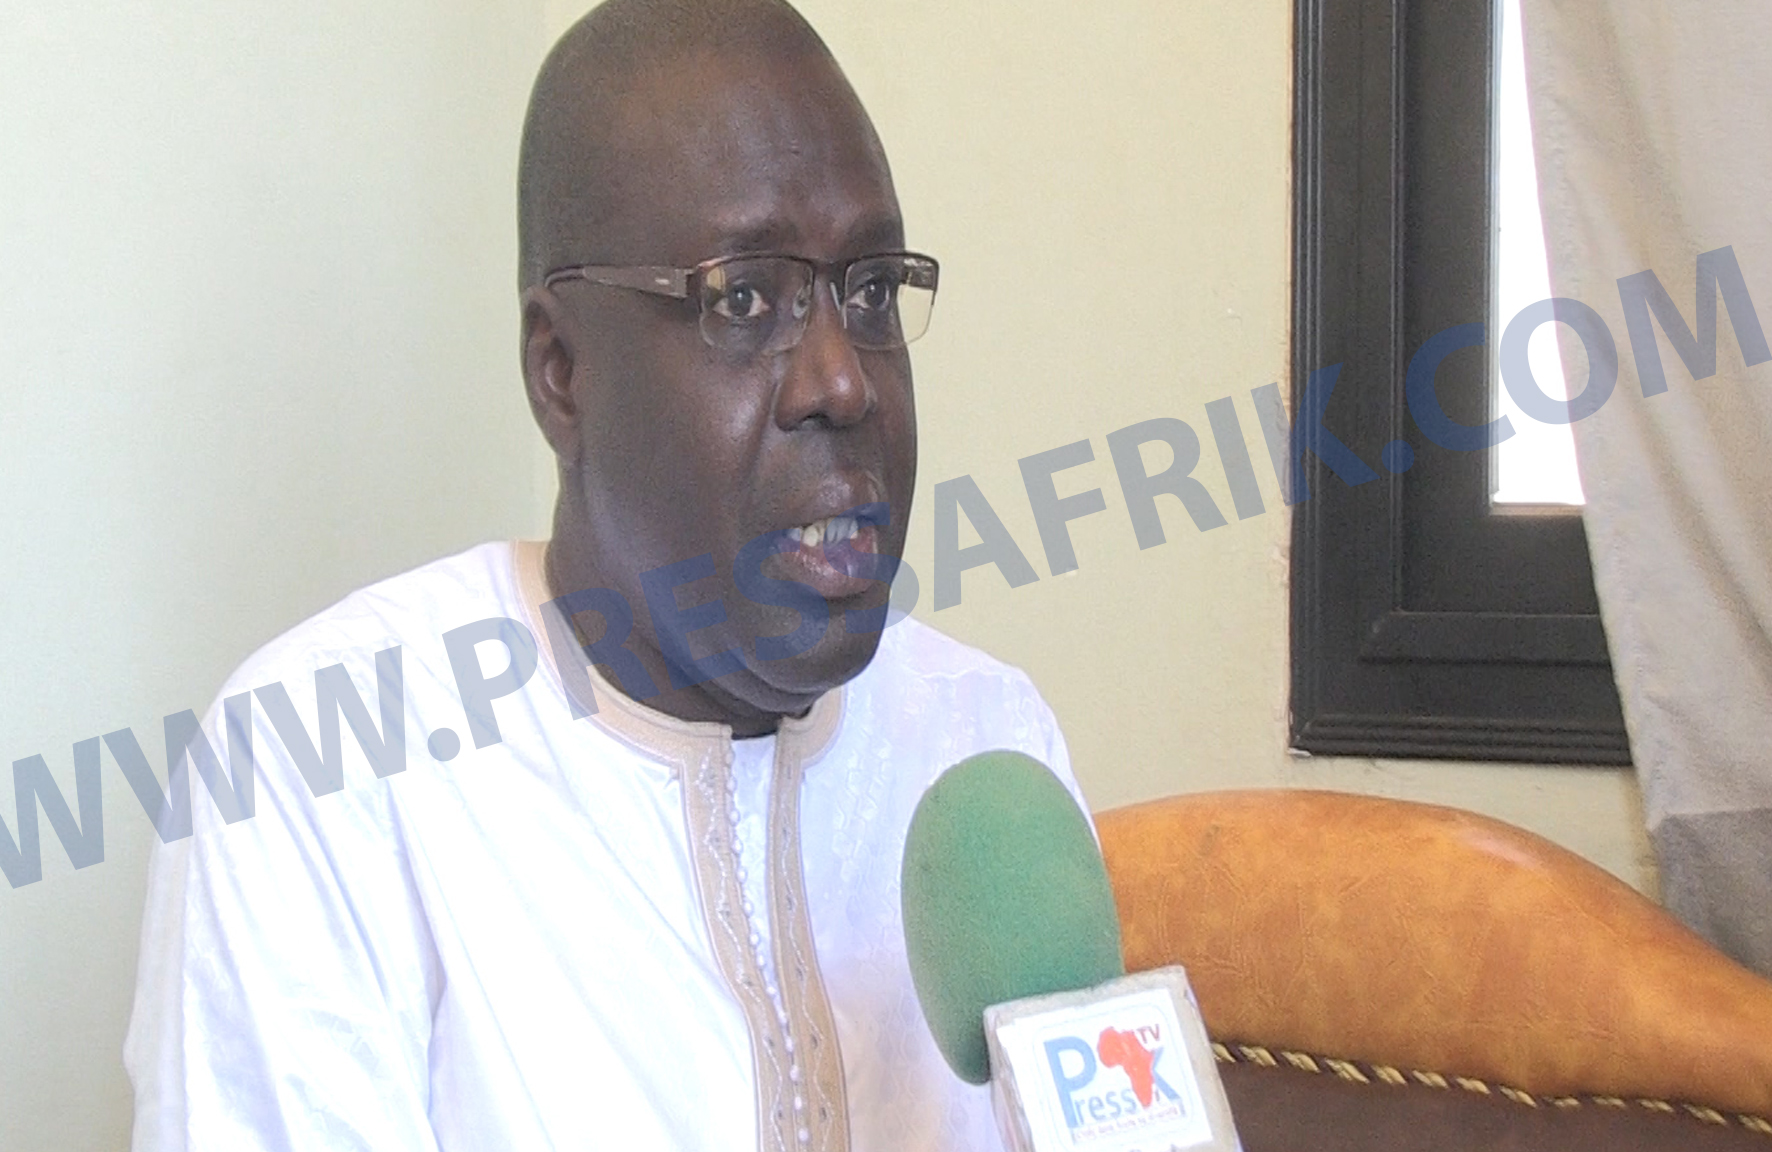 Mali - CEDEAO: «C’est l’une des plus grandes crises avec des répercussions néfastes  en Afrique», selon Boubacar Seye de HSF